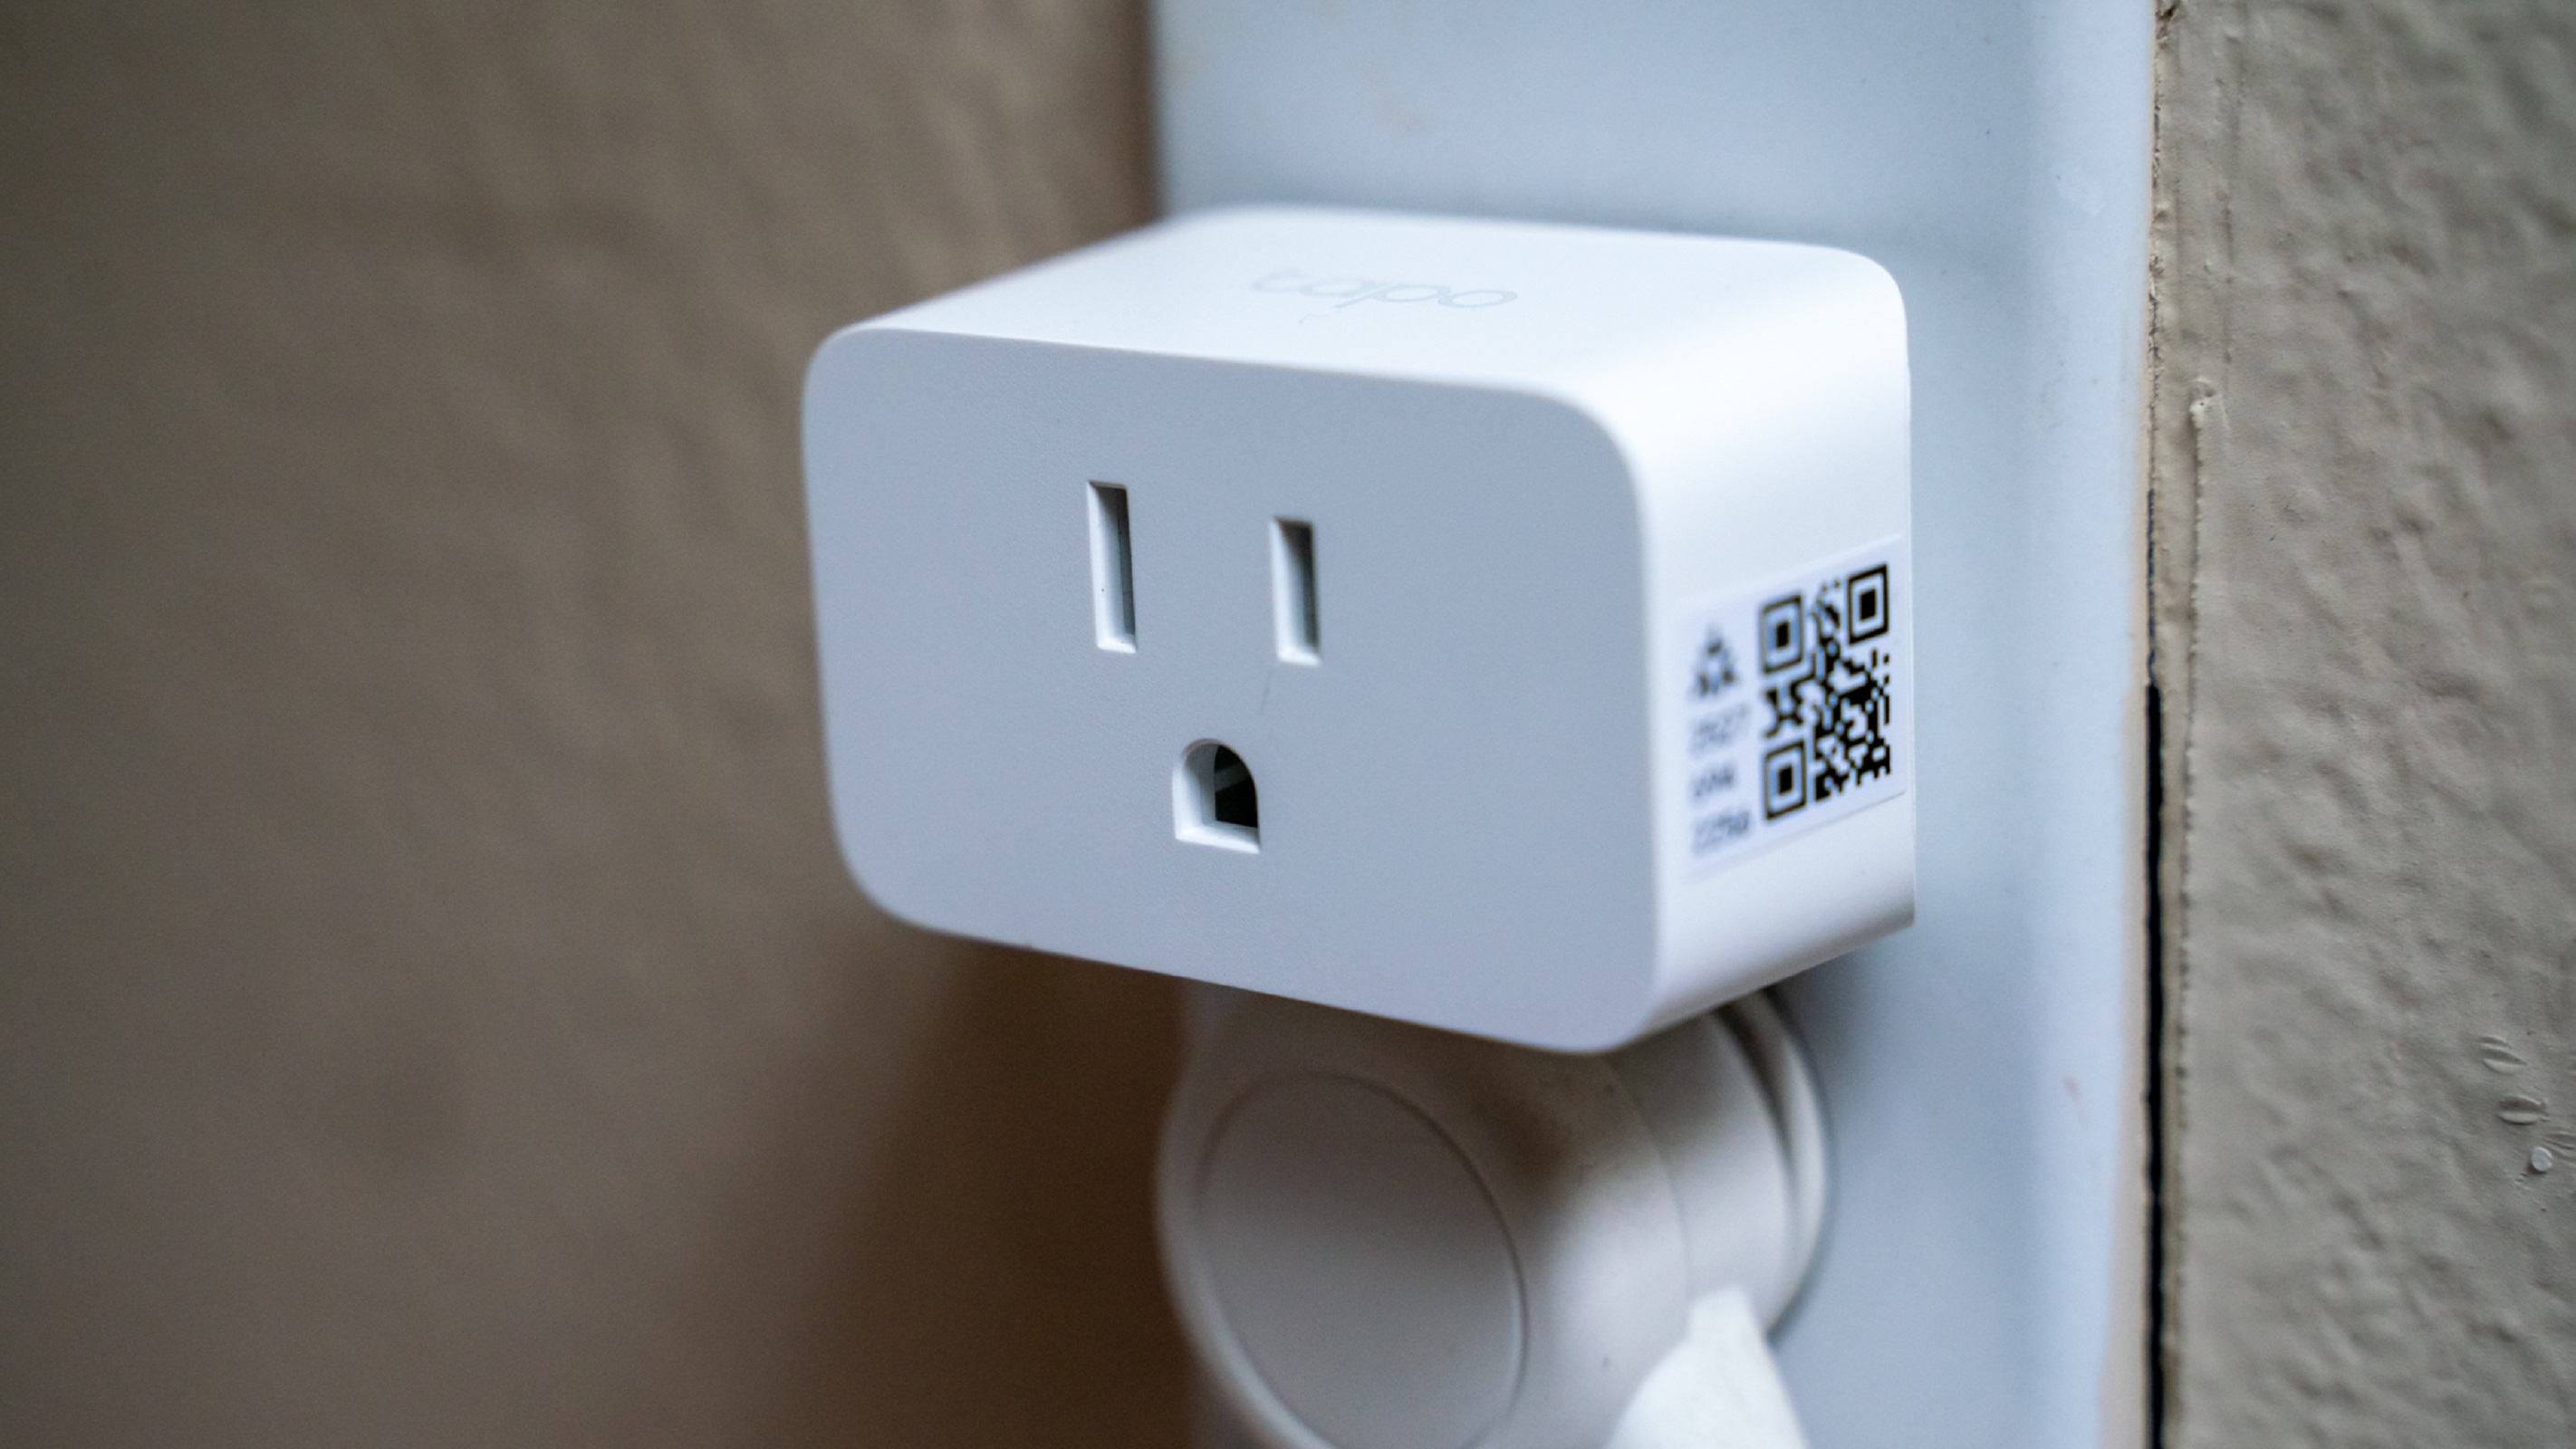 Live - i like these- they help save money , teckin smart plug